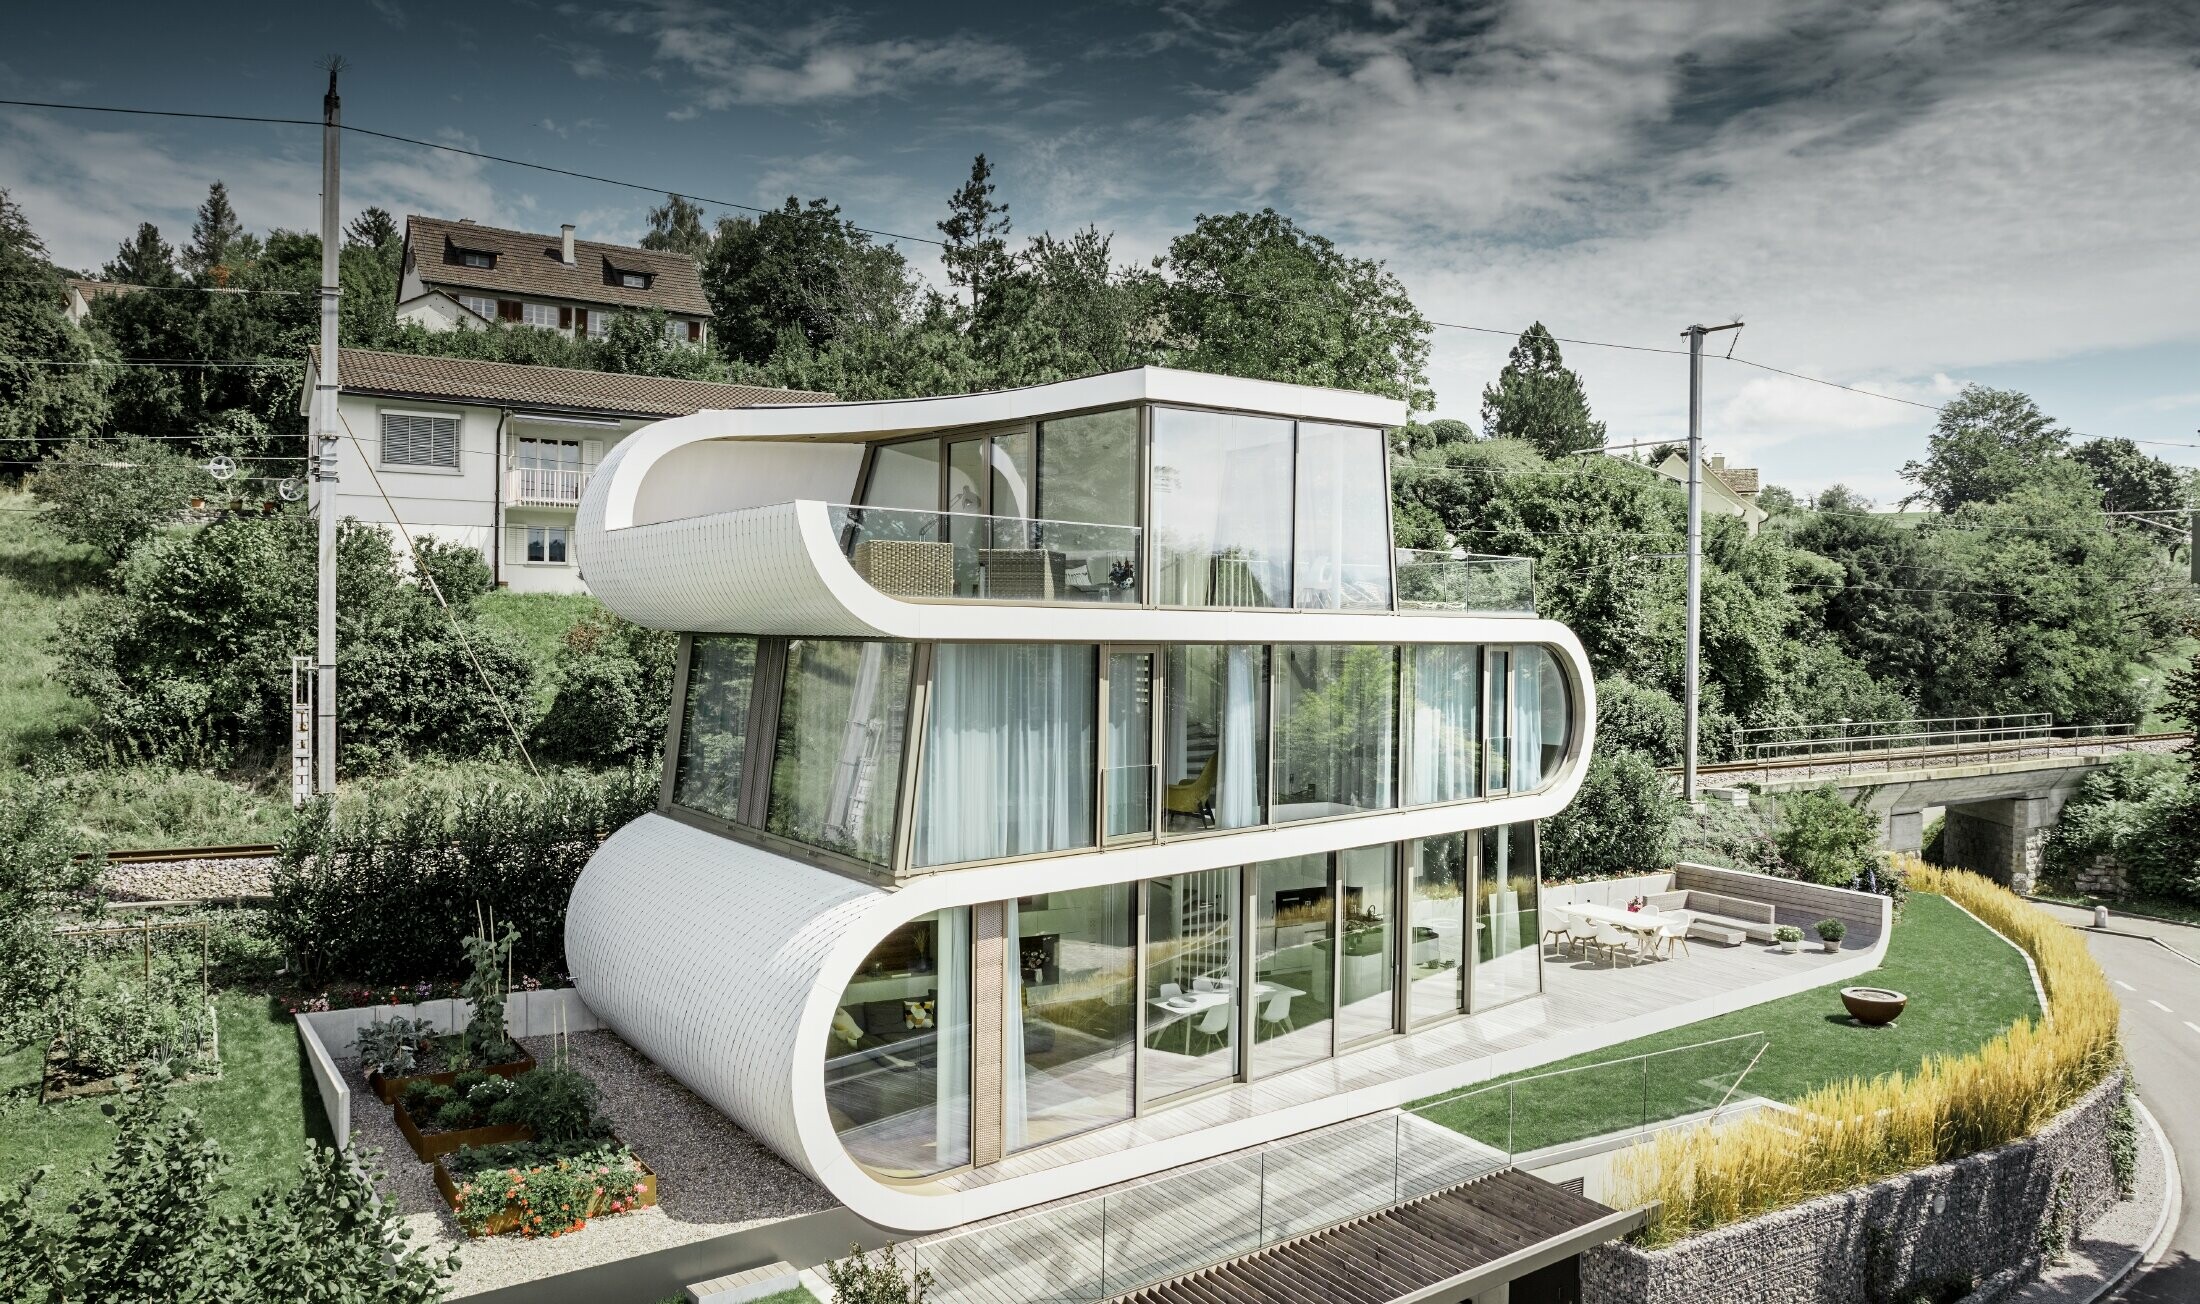 Vrlo moderna obiteljska kuća koju je dizajnirao arhitekt Camenzind iz Züricha; Vijugava traka međusobno spaja pojedine razine. Zaobljenja su obložena malim PREFA krovnim rombom u bijeloj boji. Kuća ima mnoge i velike staklene površine zbog čega djeluje vrlo otvoreno.